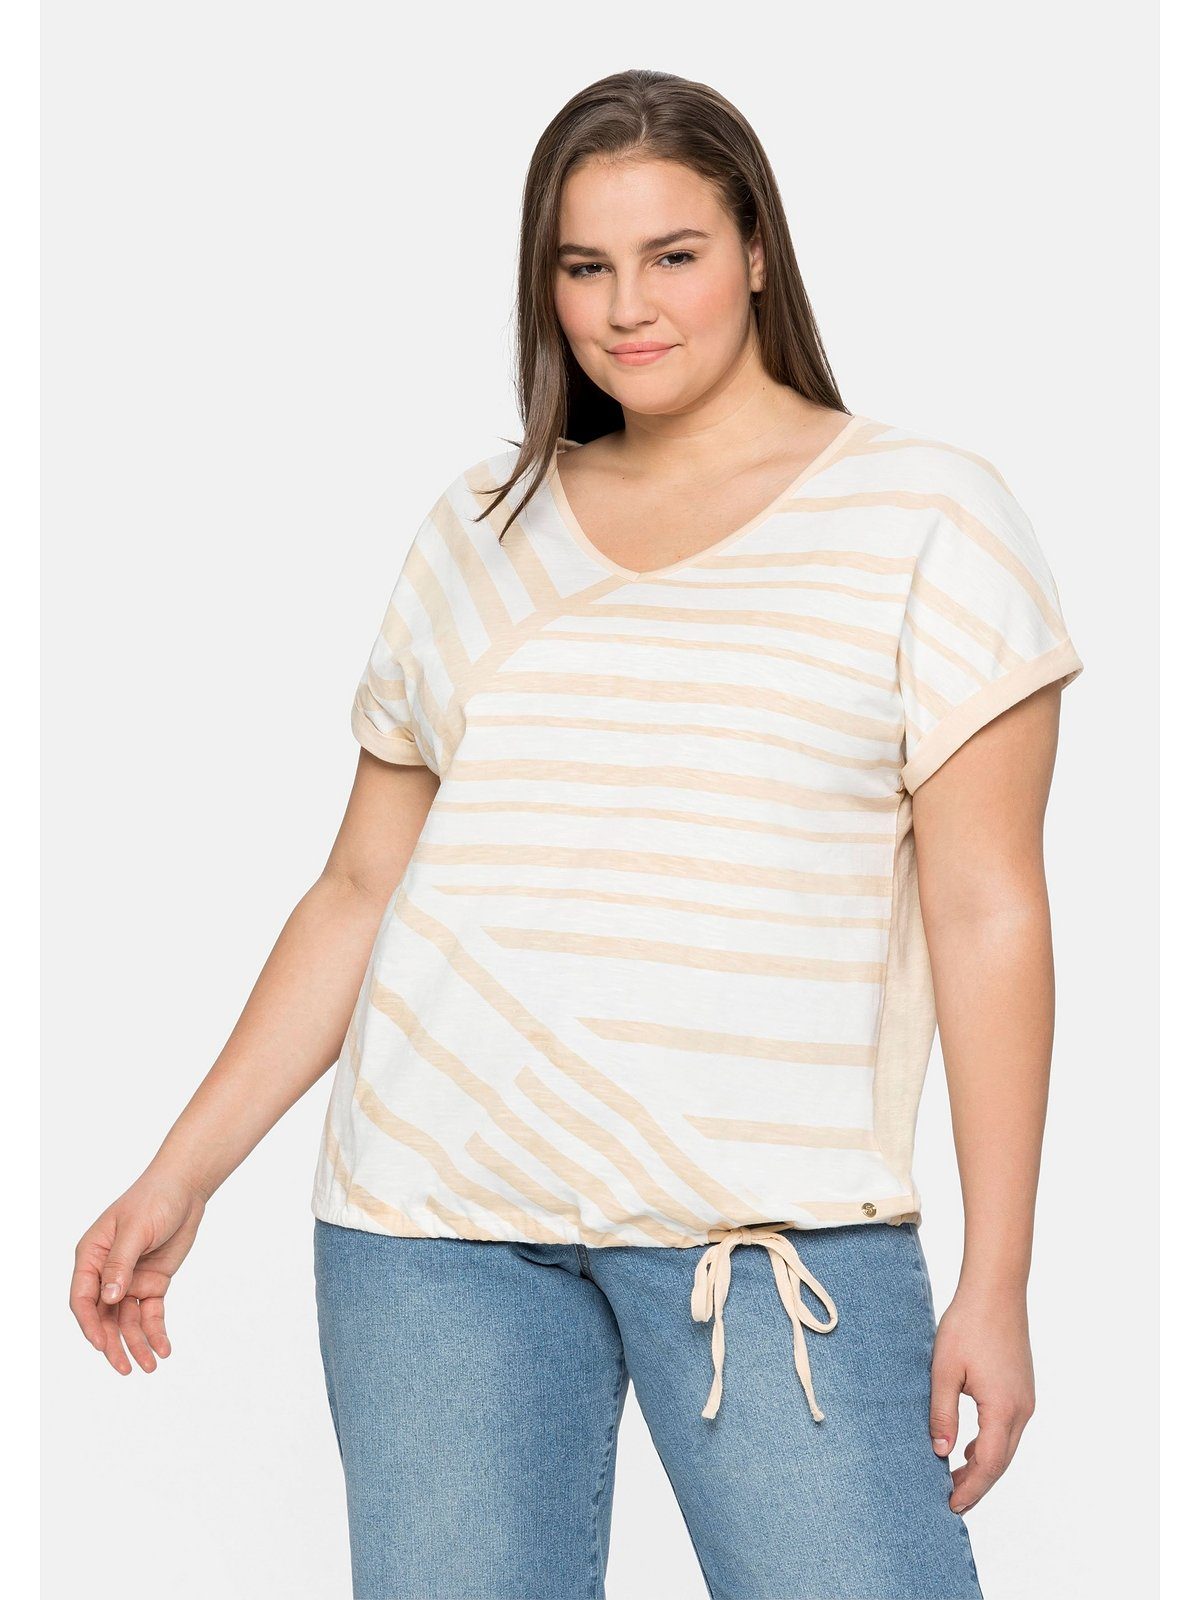 Sheego T-Shirt Große Größen mit Streifenprint vorn und Tunnelzug | V-Shirts